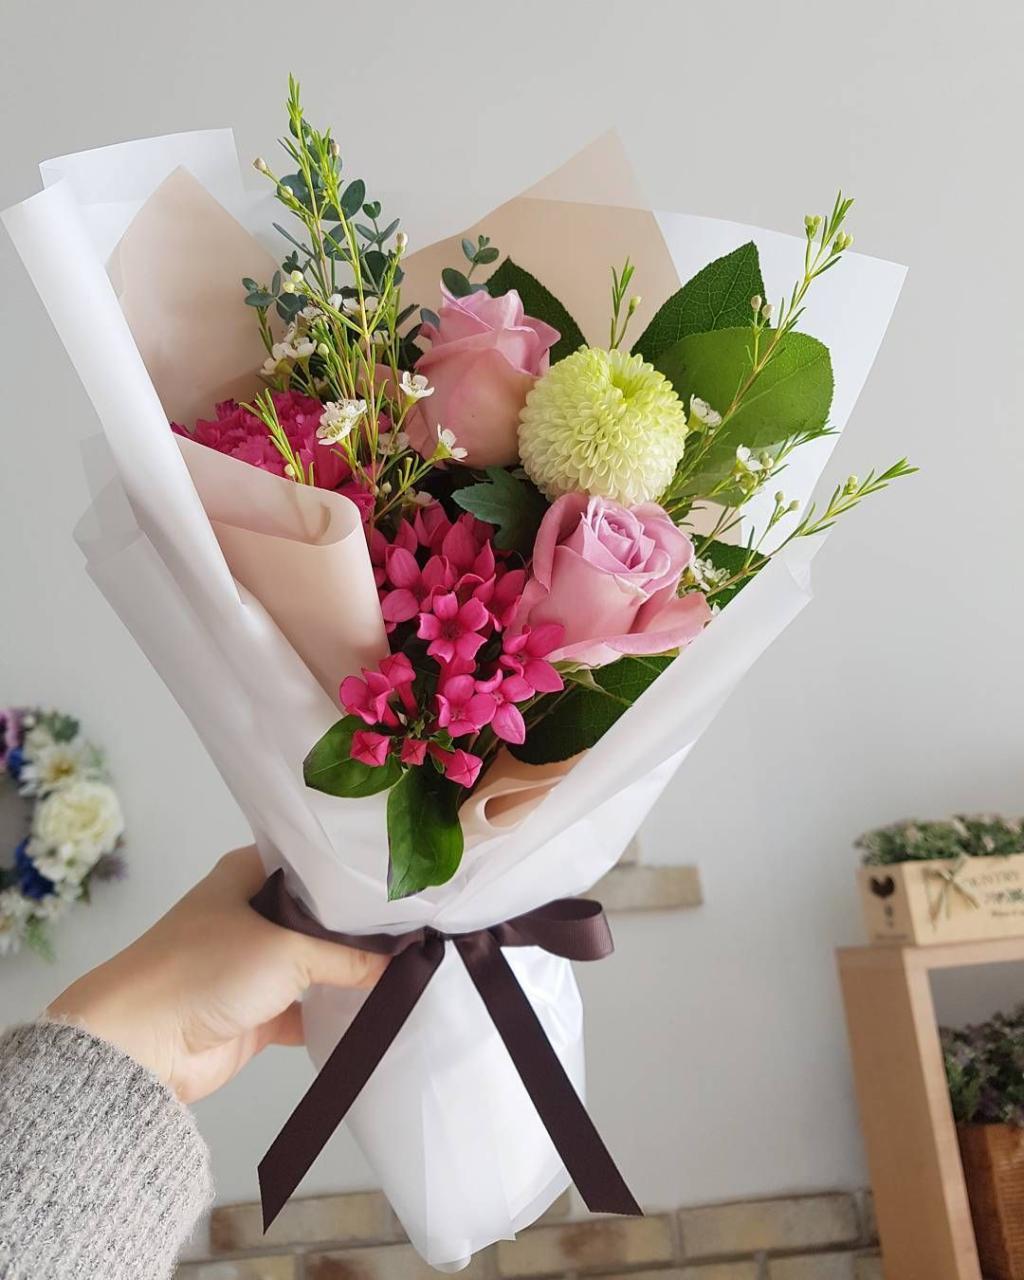 Shop hoa tươi đẹp ở Phú Yên: Chất lượng từng cánh hoa